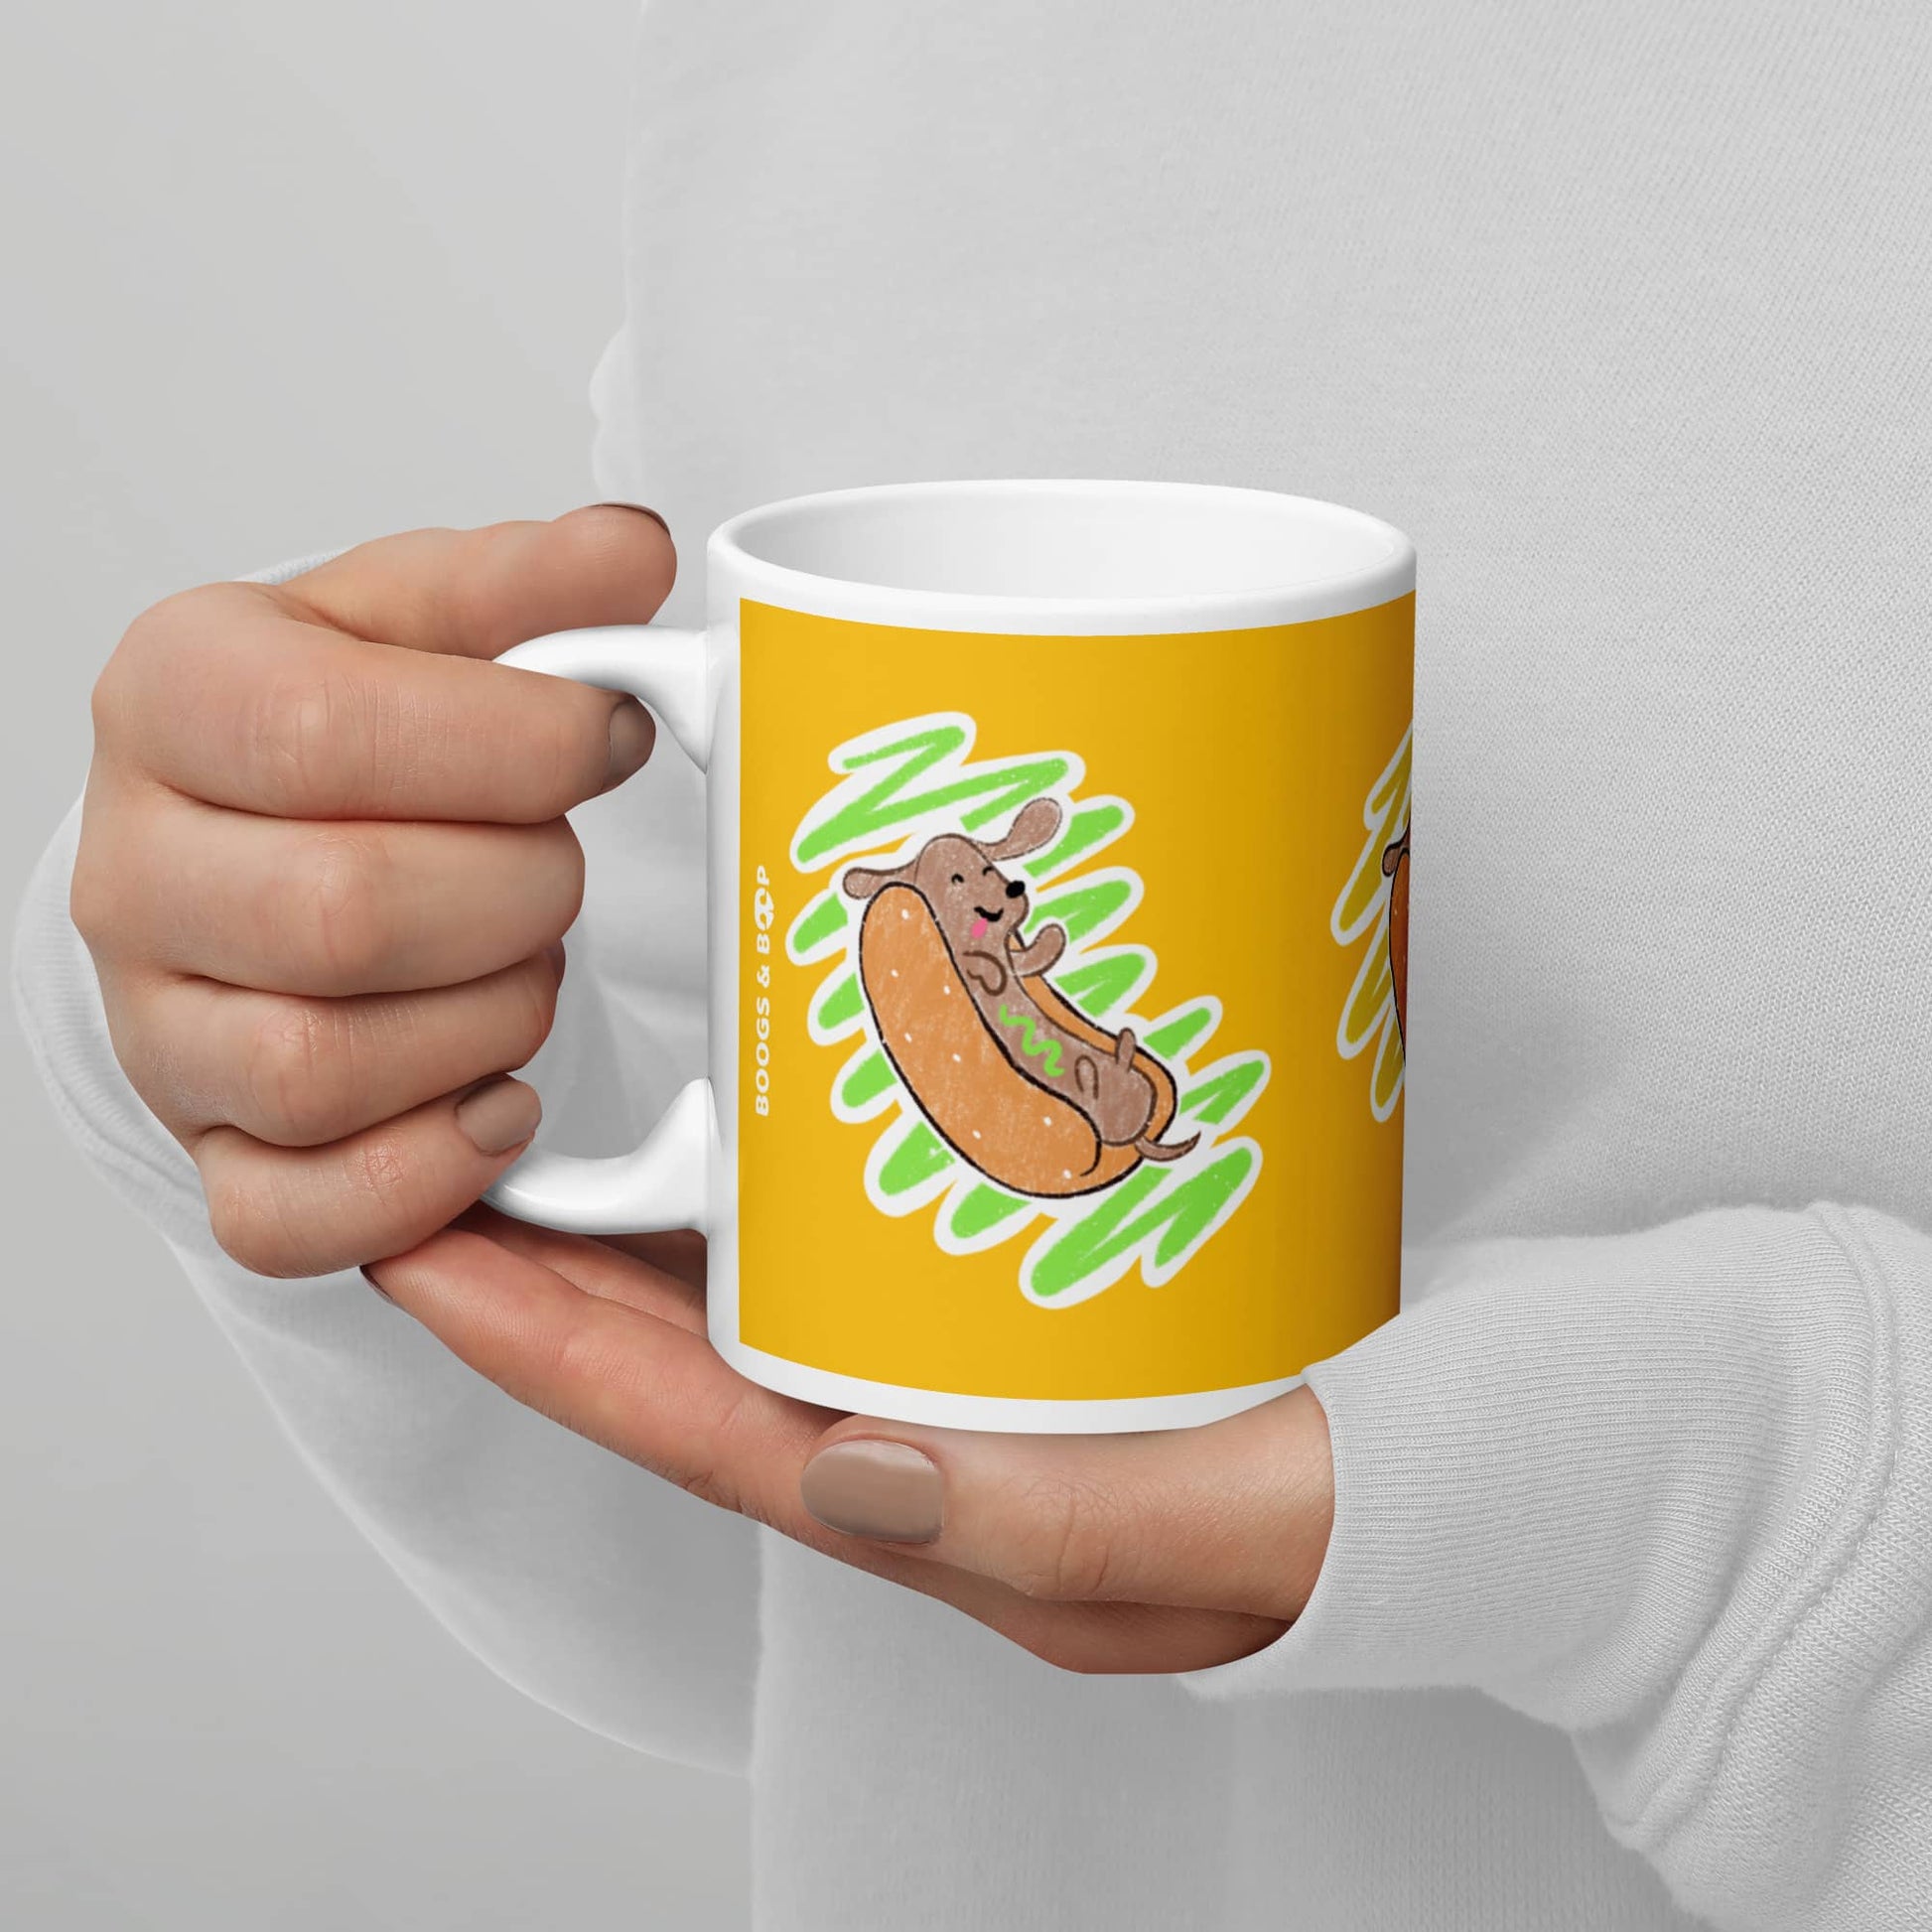 Shop Dachshund Hot Dog Lover Ceramic Mug (11 oz) by Boogs & Boop.